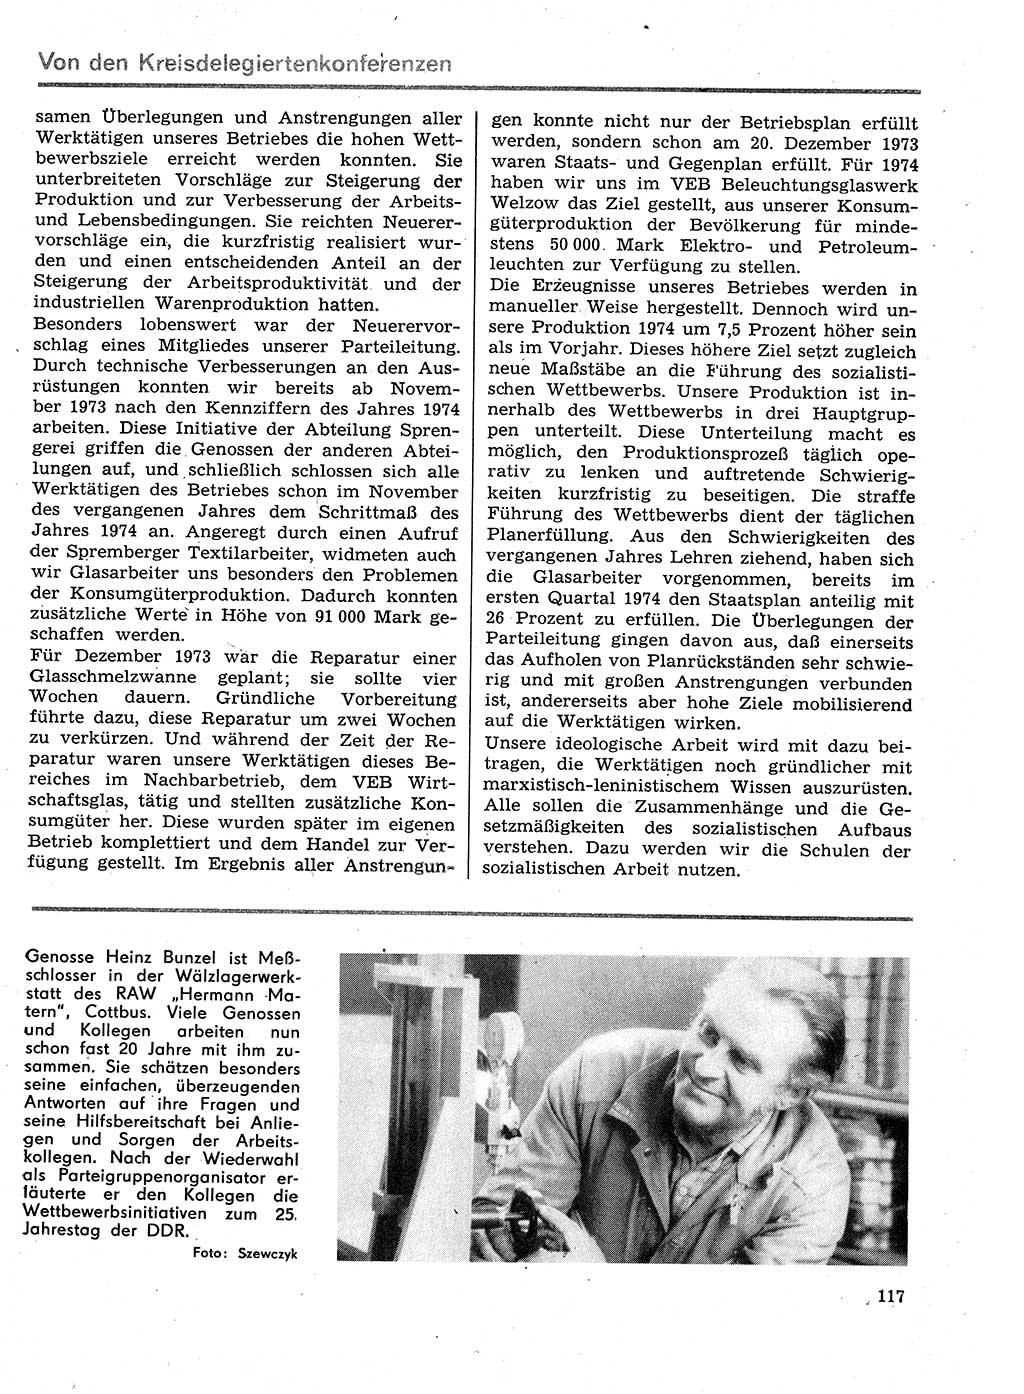 Neuer Weg (NW), Organ des Zentralkomitees (ZK) der SED (Sozialistische Einheitspartei Deutschlands) für Fragen des Parteilebens, 29. Jahrgang [Deutsche Demokratische Republik (DDR)] 1974, Seite 117 (NW ZK SED DDR 1974, S. 117)